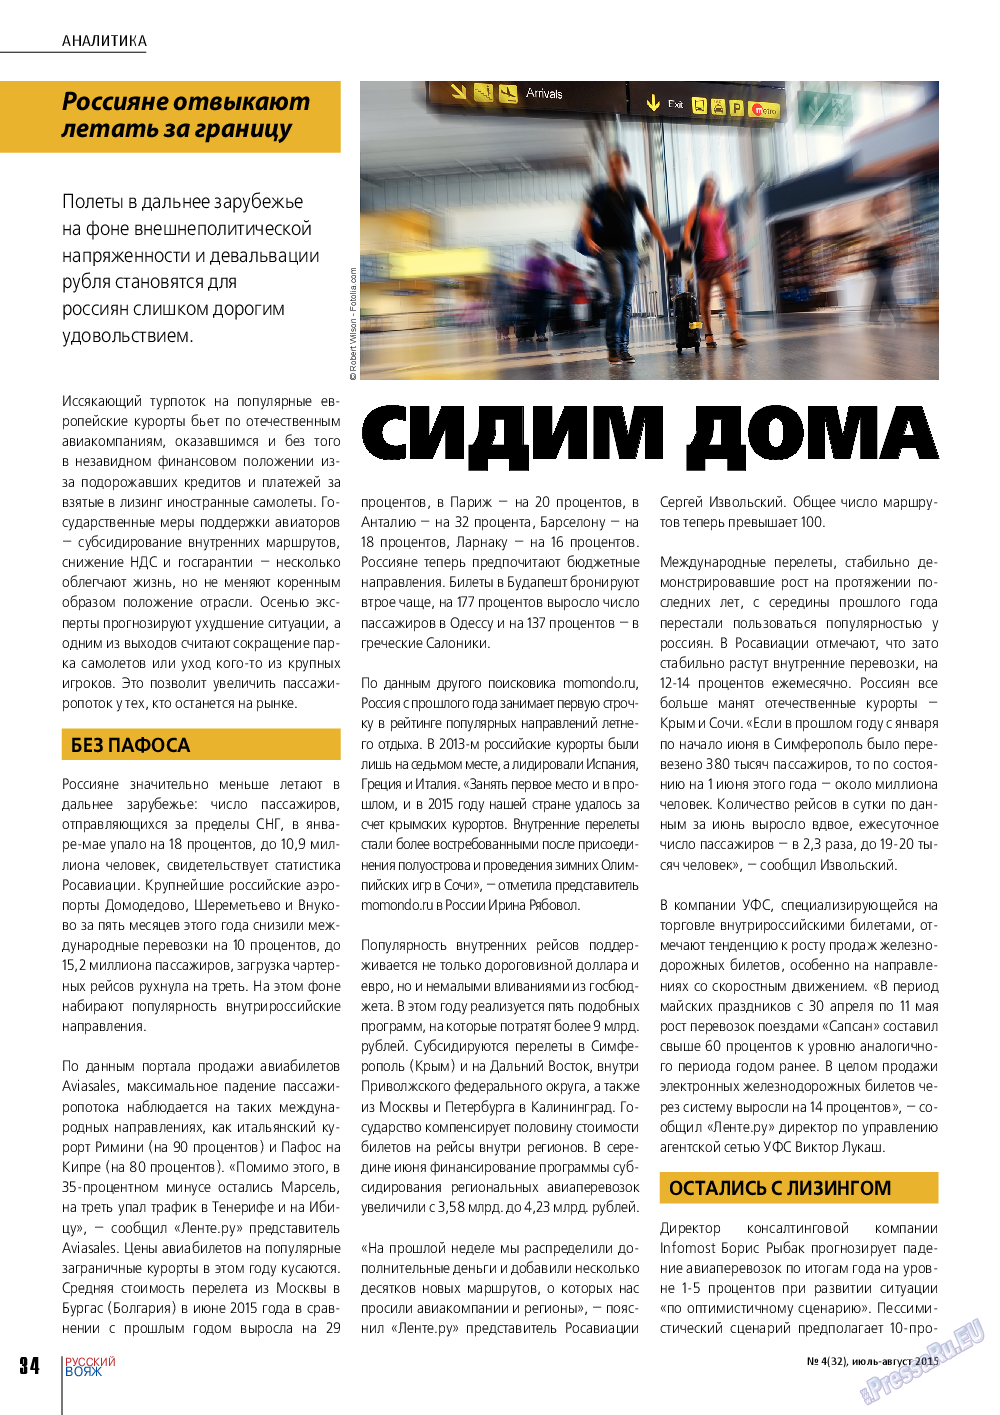 Русский вояж (журнал). 2015 год, номер 4, стр. 34